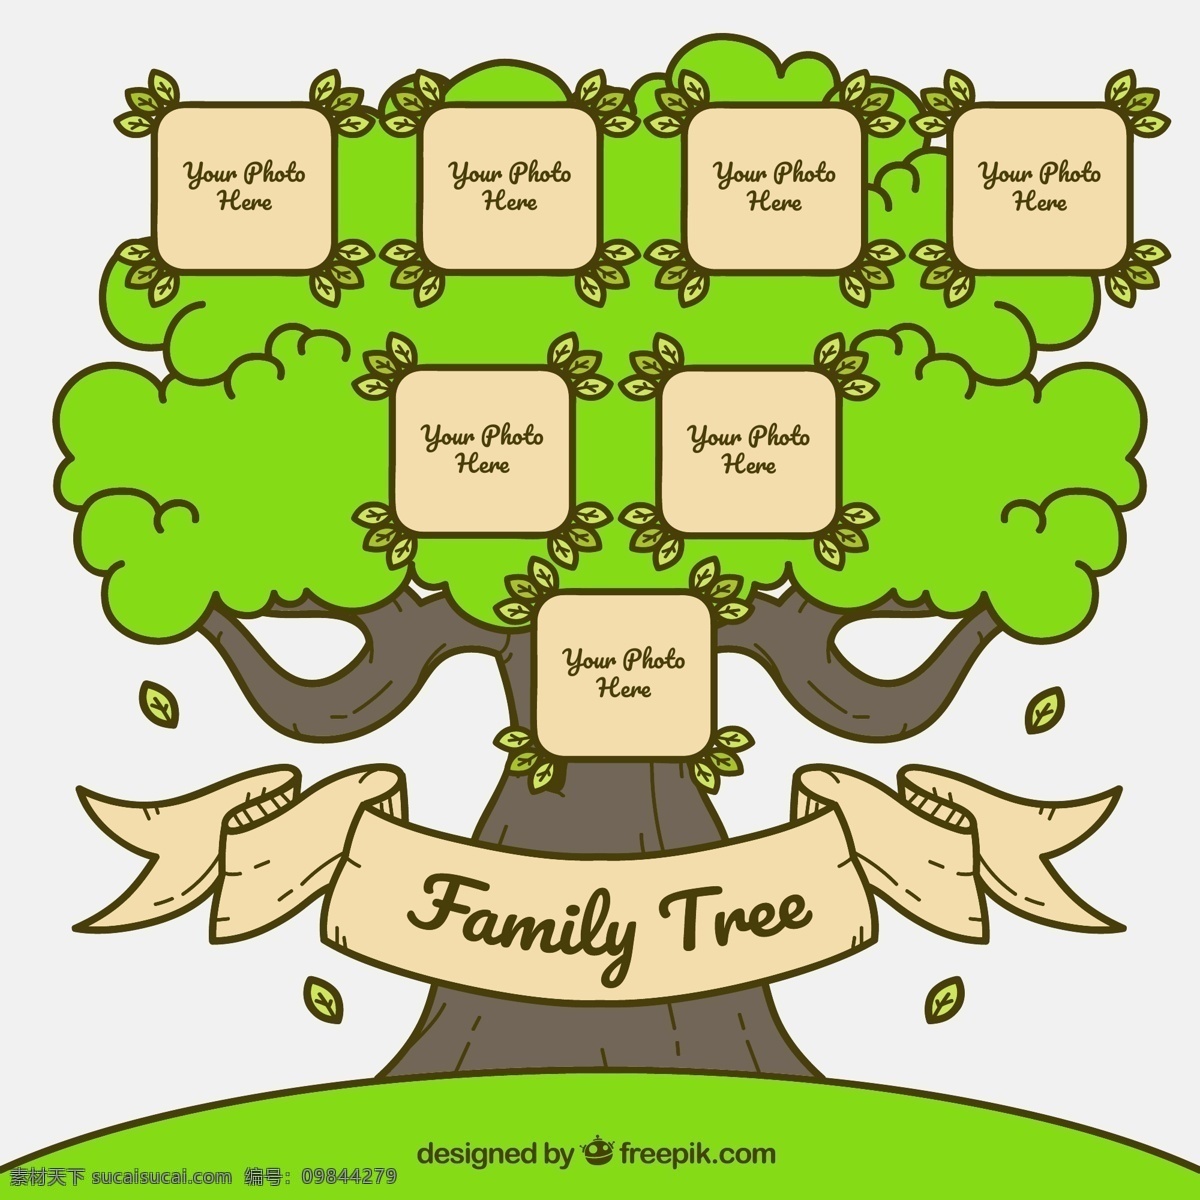 创意 彩绘 绿色 家族 树 家族树 树叶 条幅 植物 生物世界 树木树叶